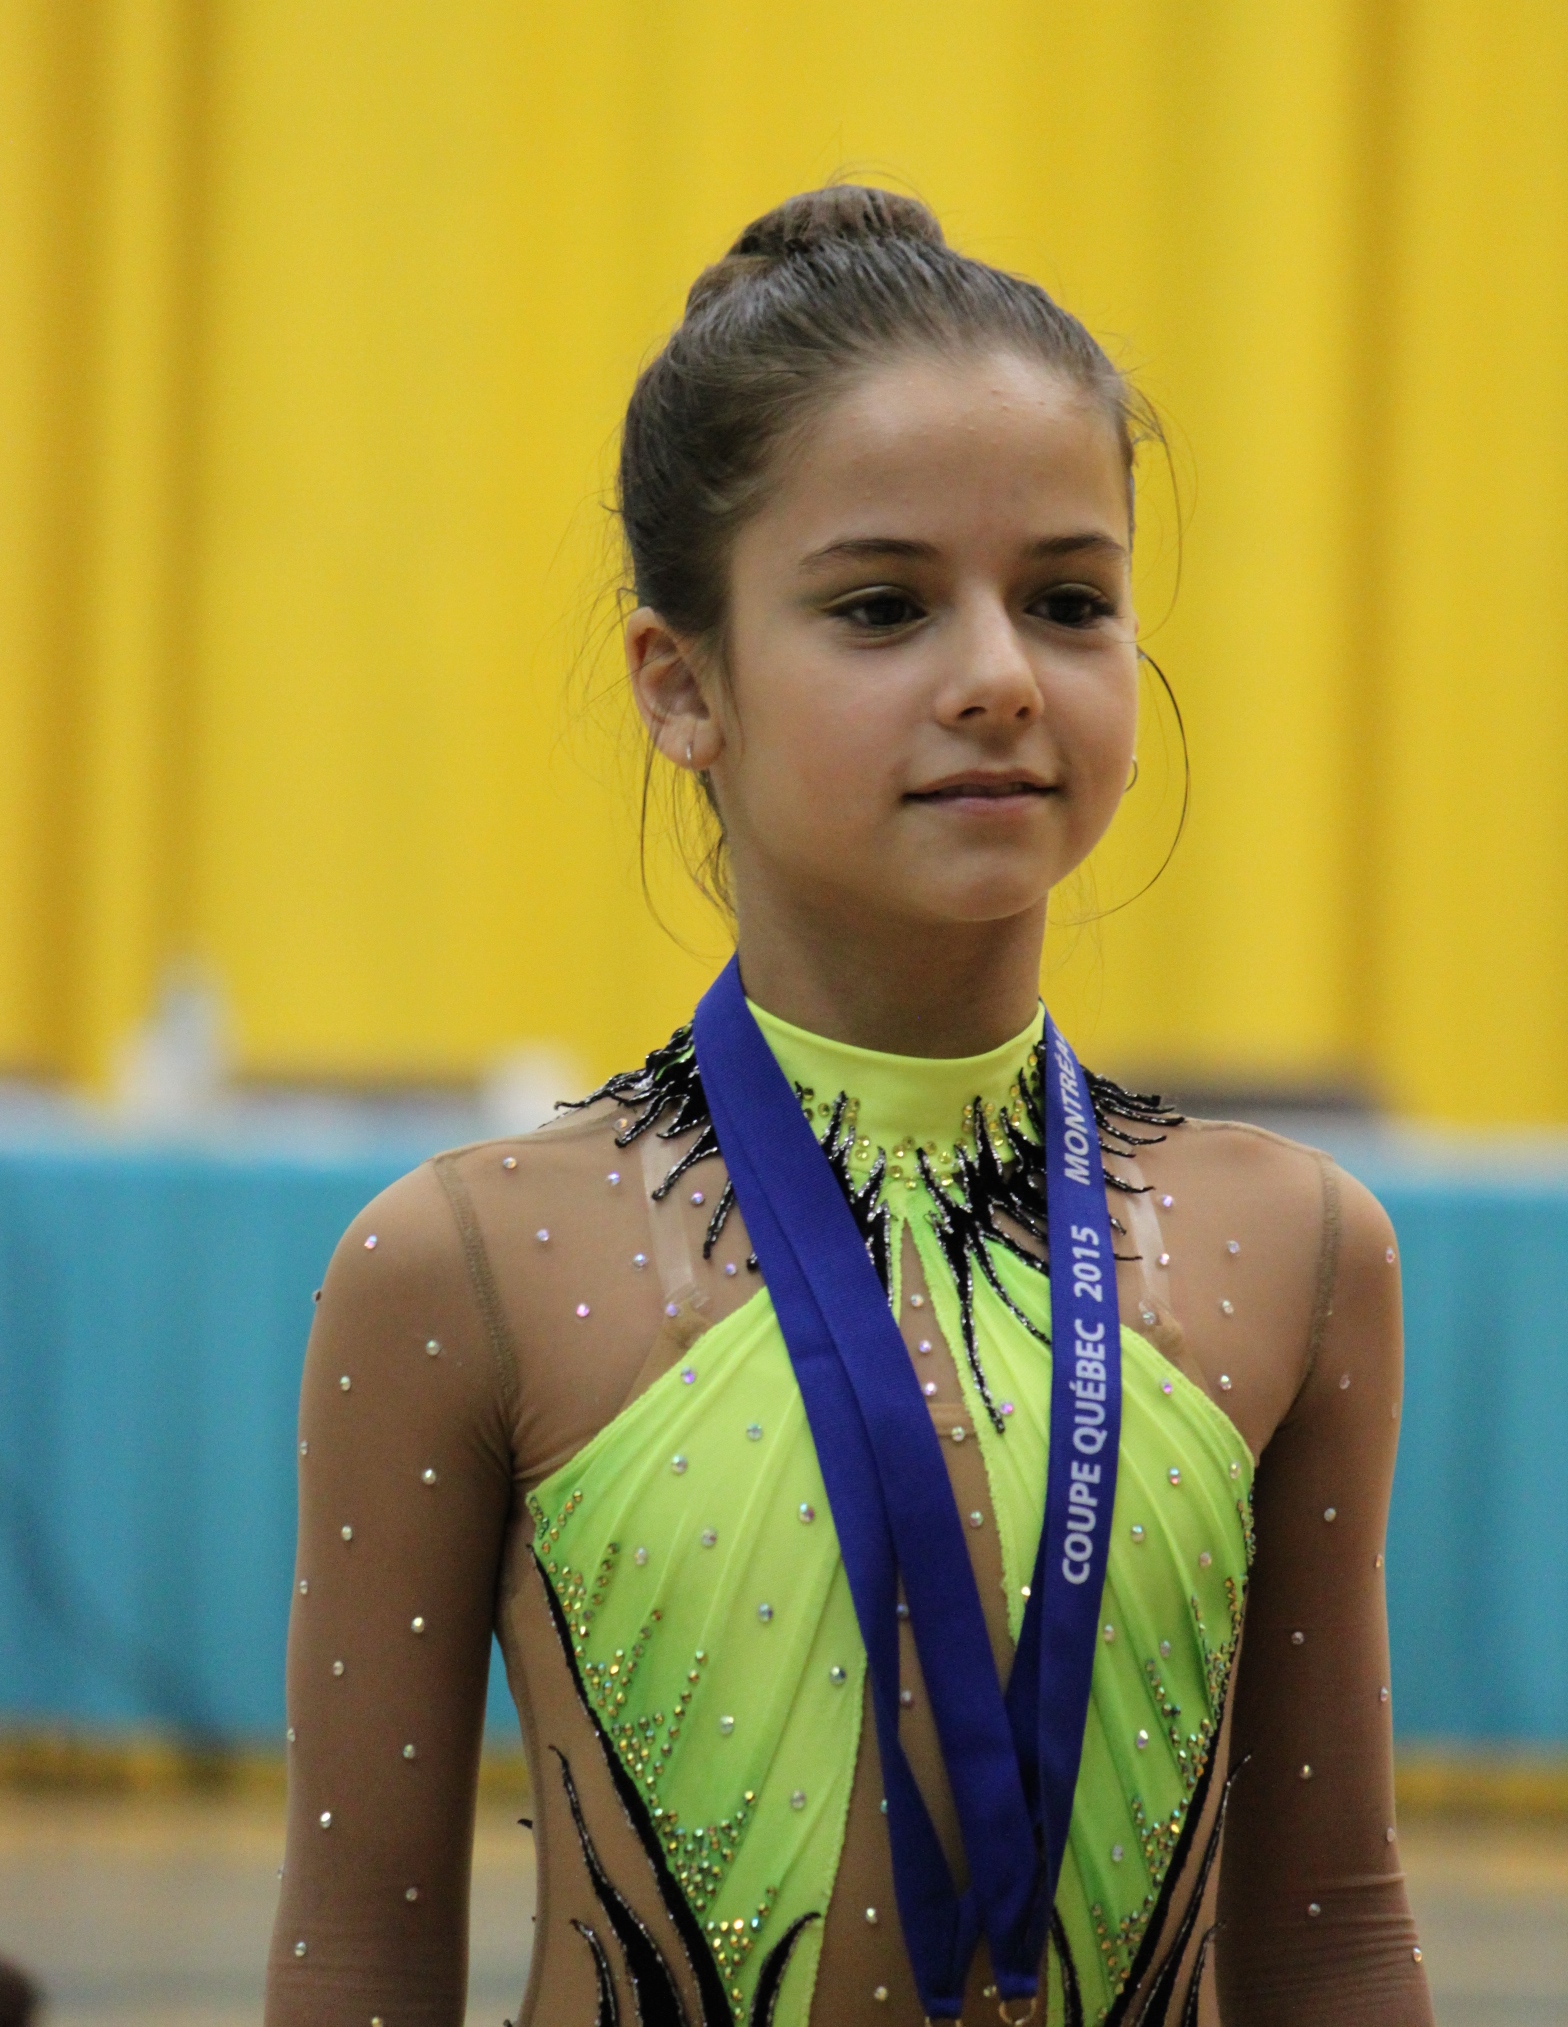 Quebec Cup 2015 Rhythmic Gymnastics